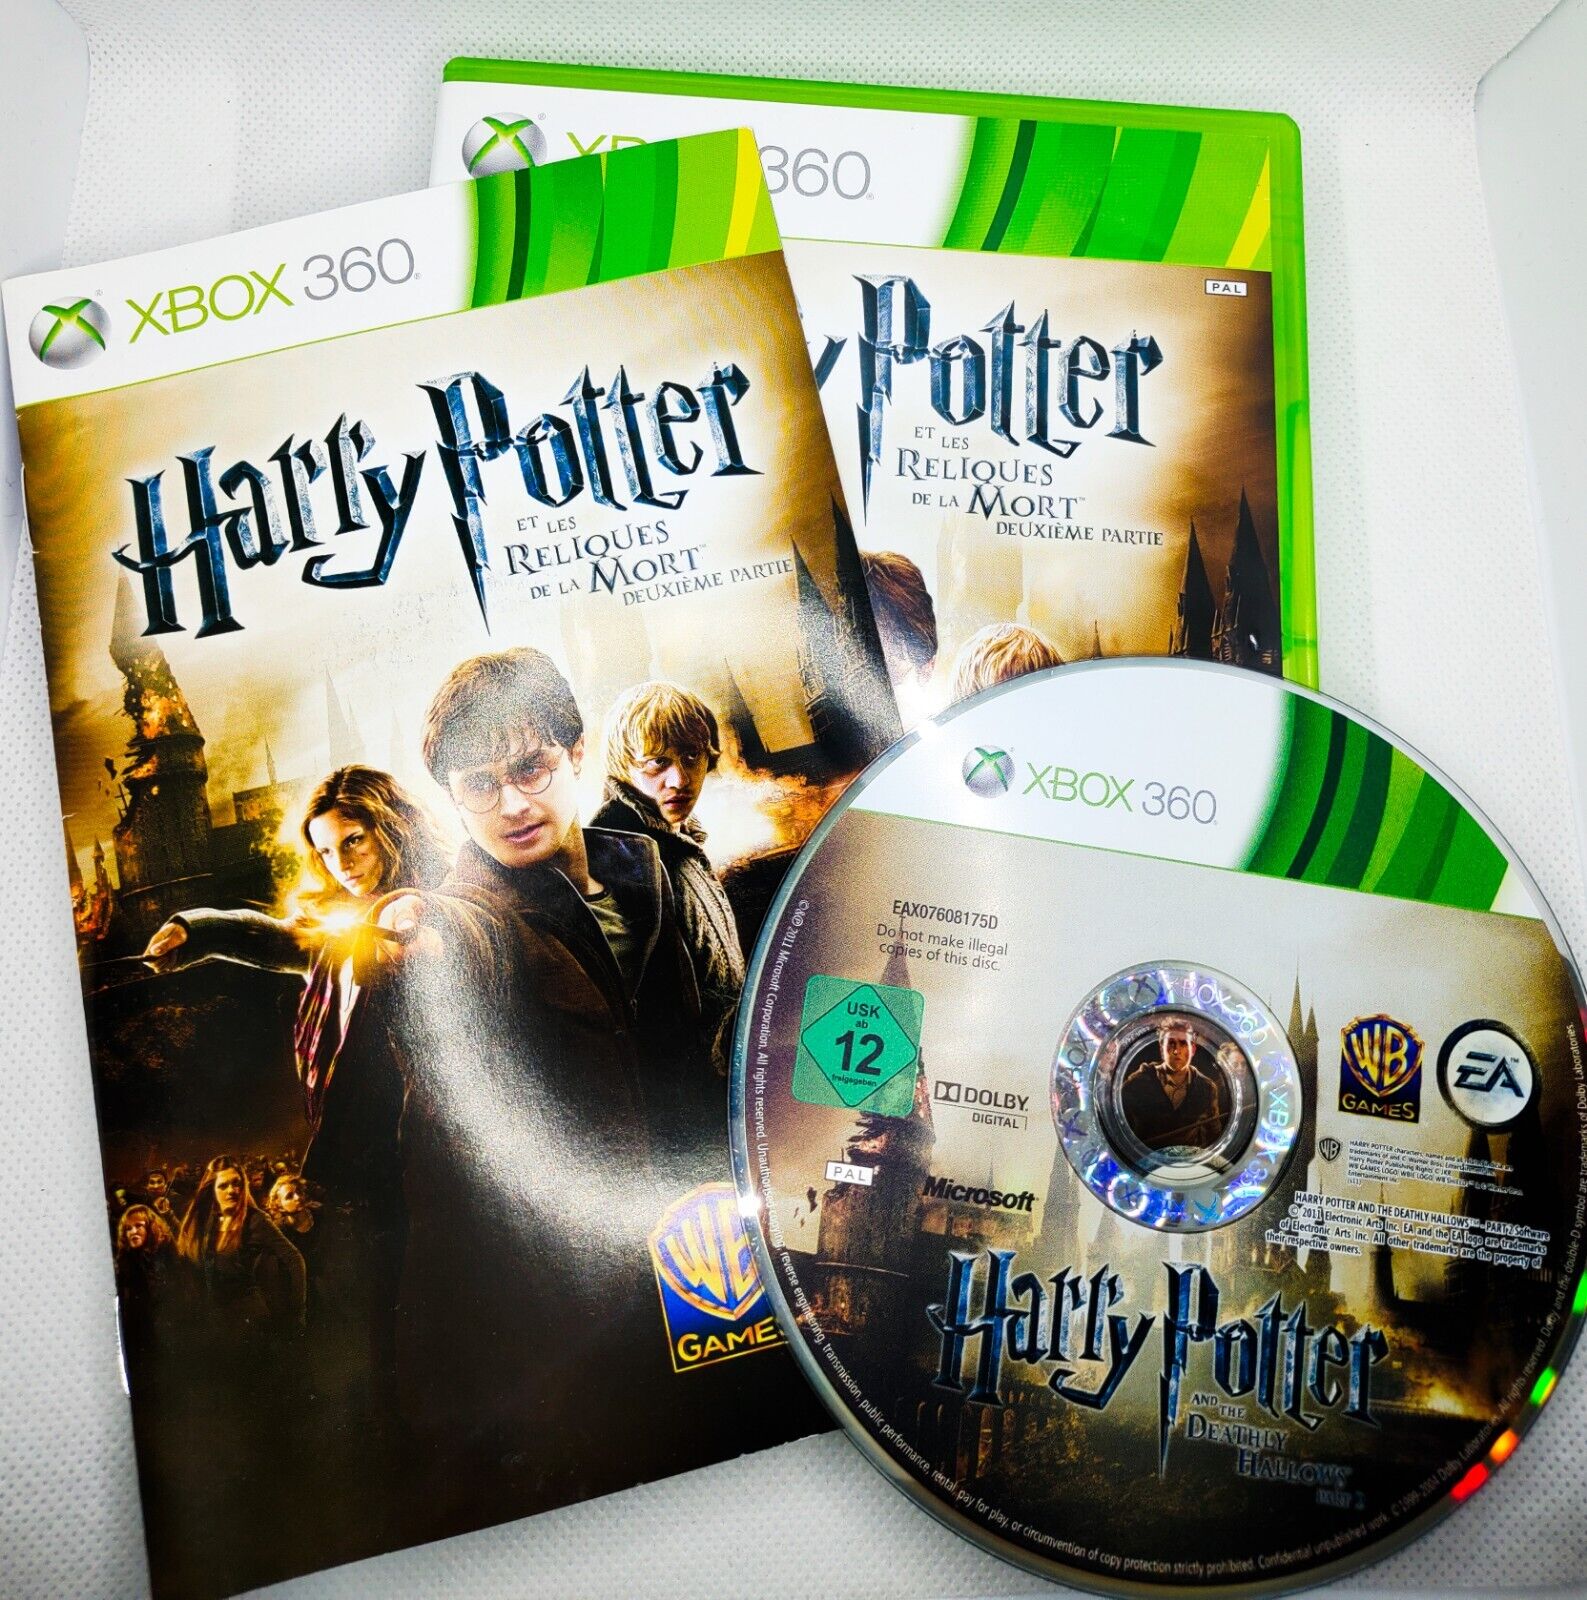 👻 🇨🇵 Harry Potter Et Les Reliques De La Mort Deuxième Partie Xbox 360 PAL FR